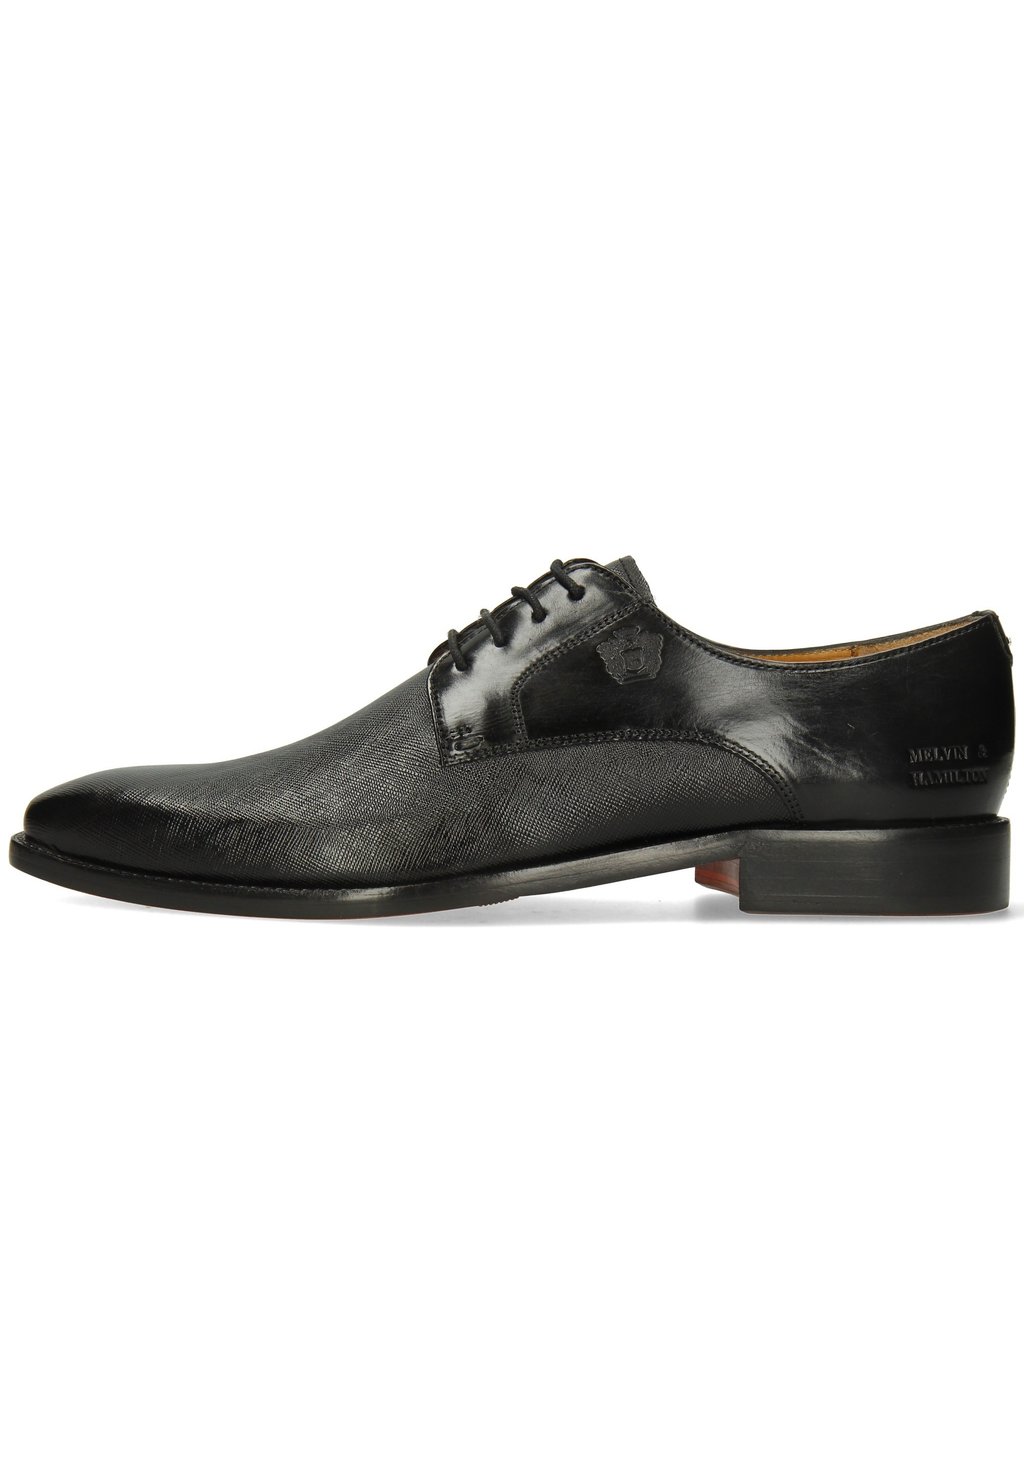 Элегантные туфли на шнуровке Martin 1 Melvin & Hamilton, цвет noir туфли на шнуровке betty melvin